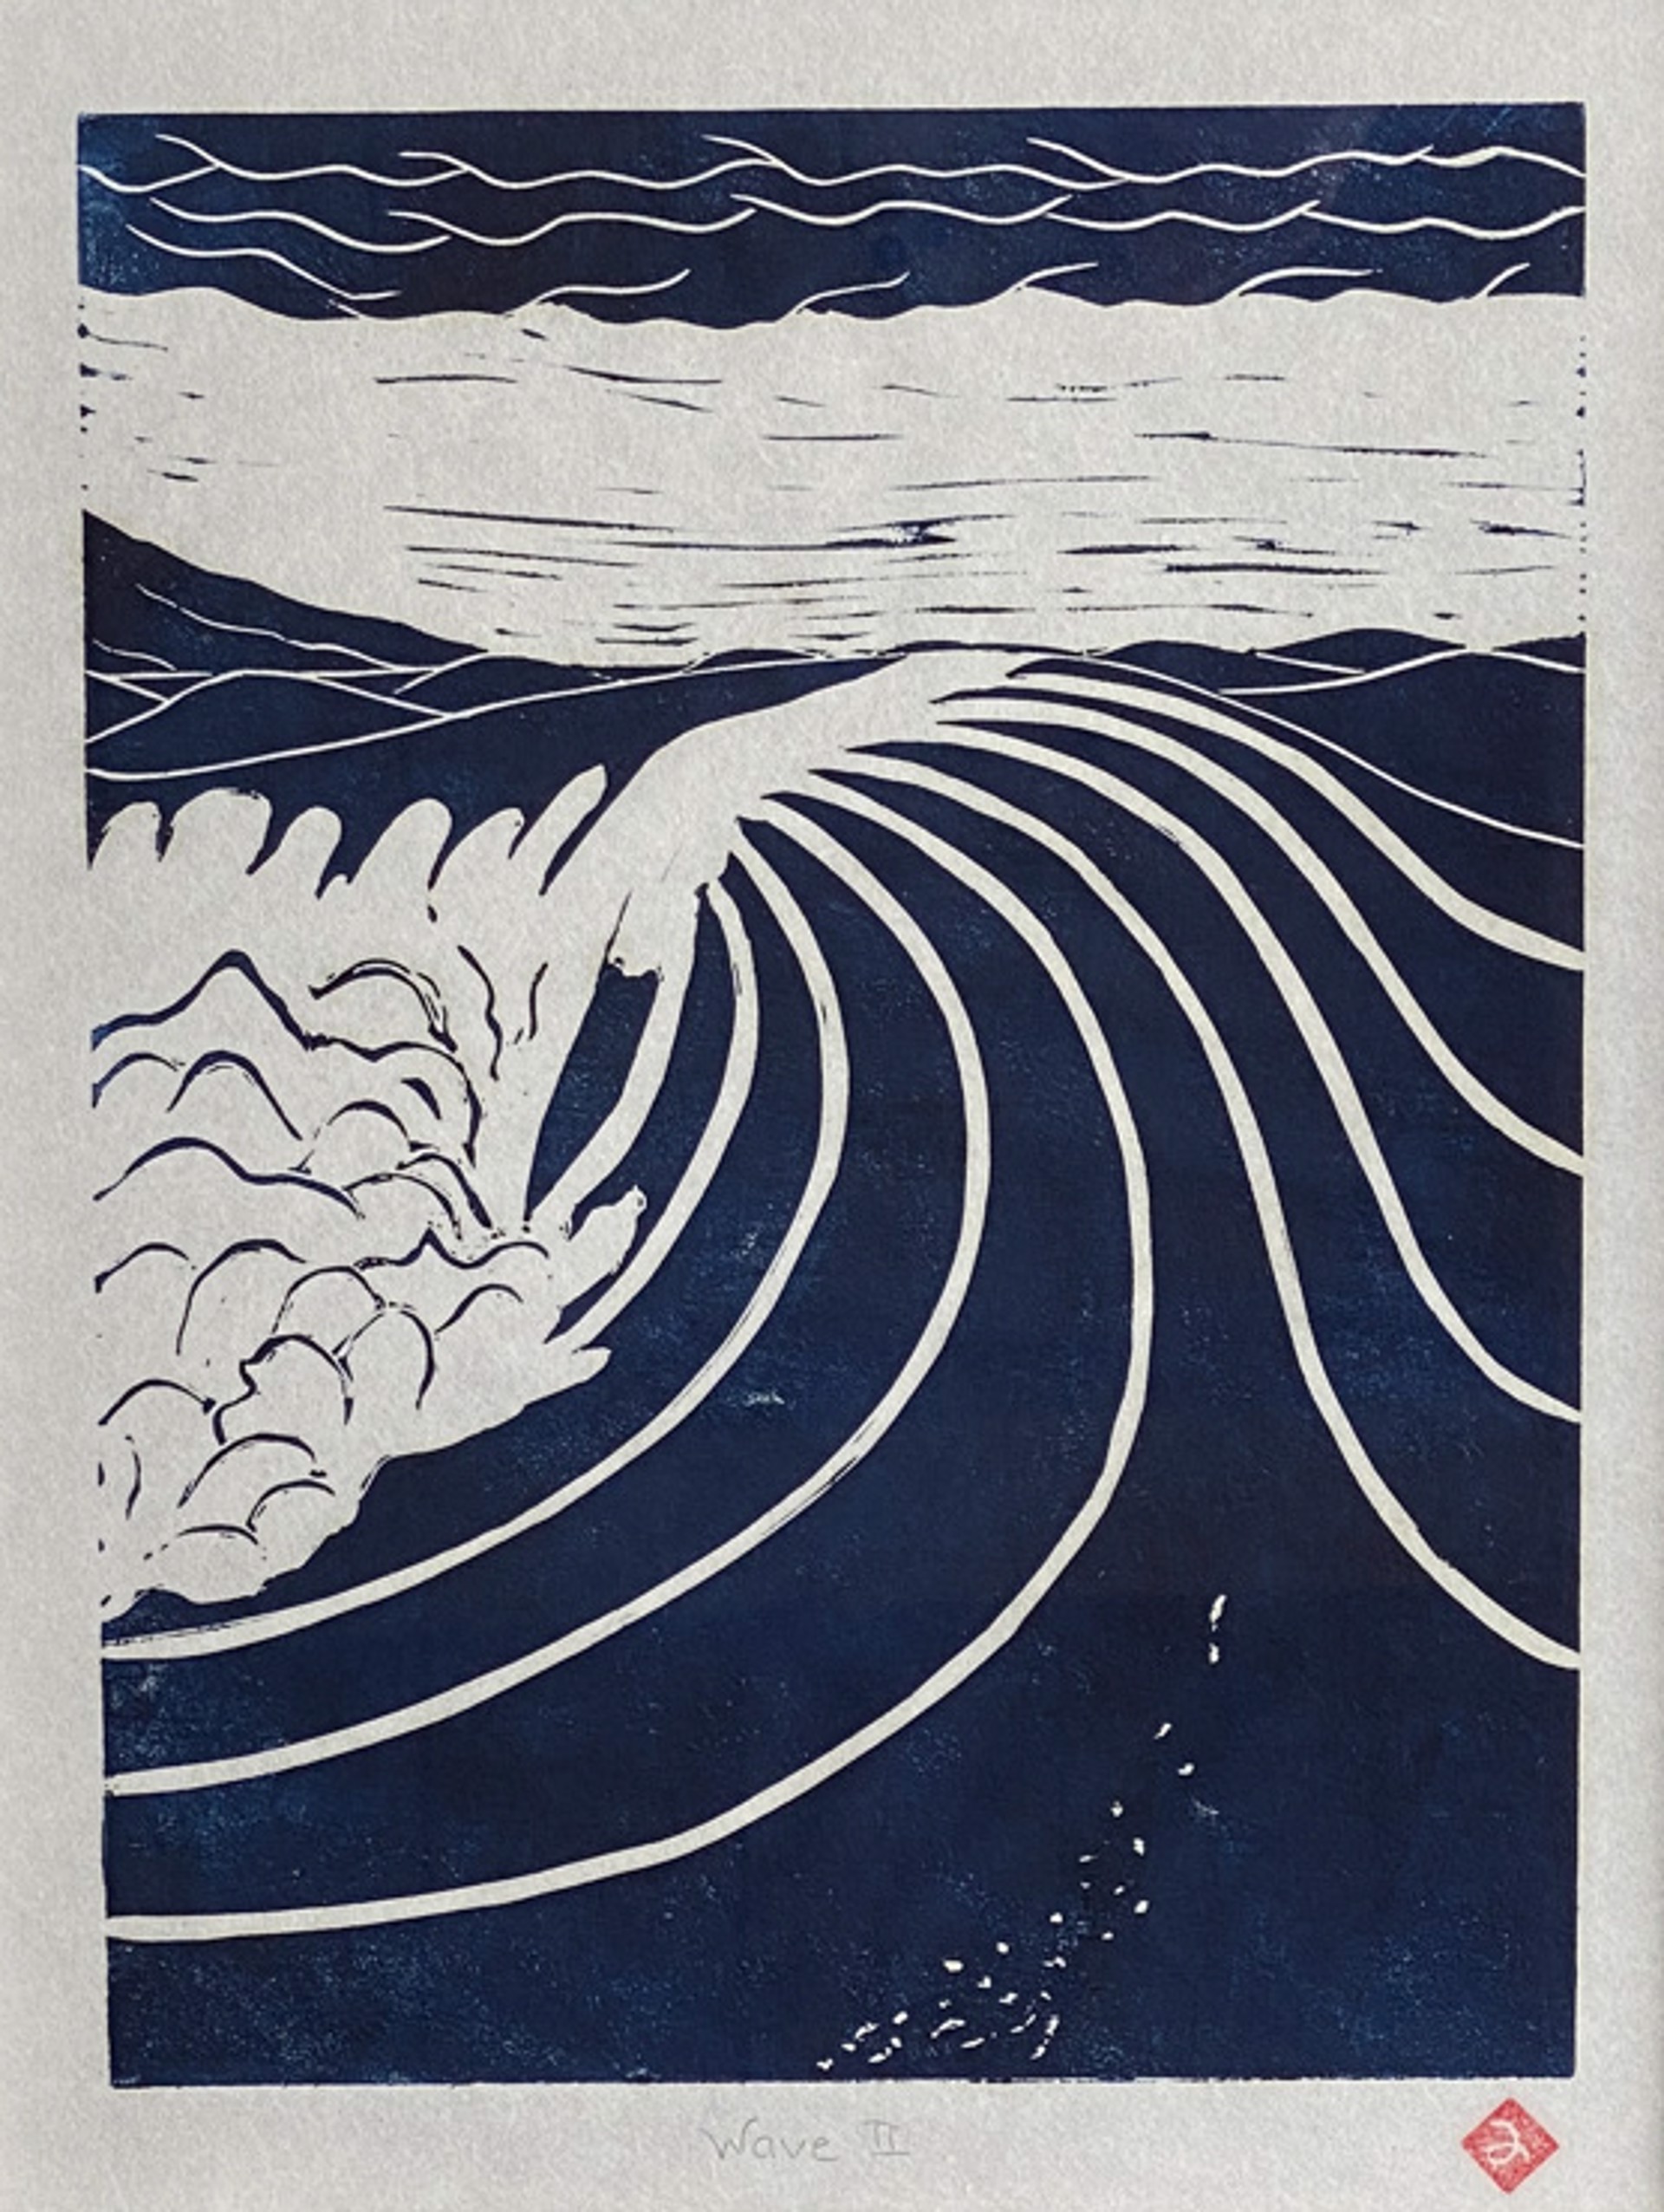 Wave II by Jim Yano